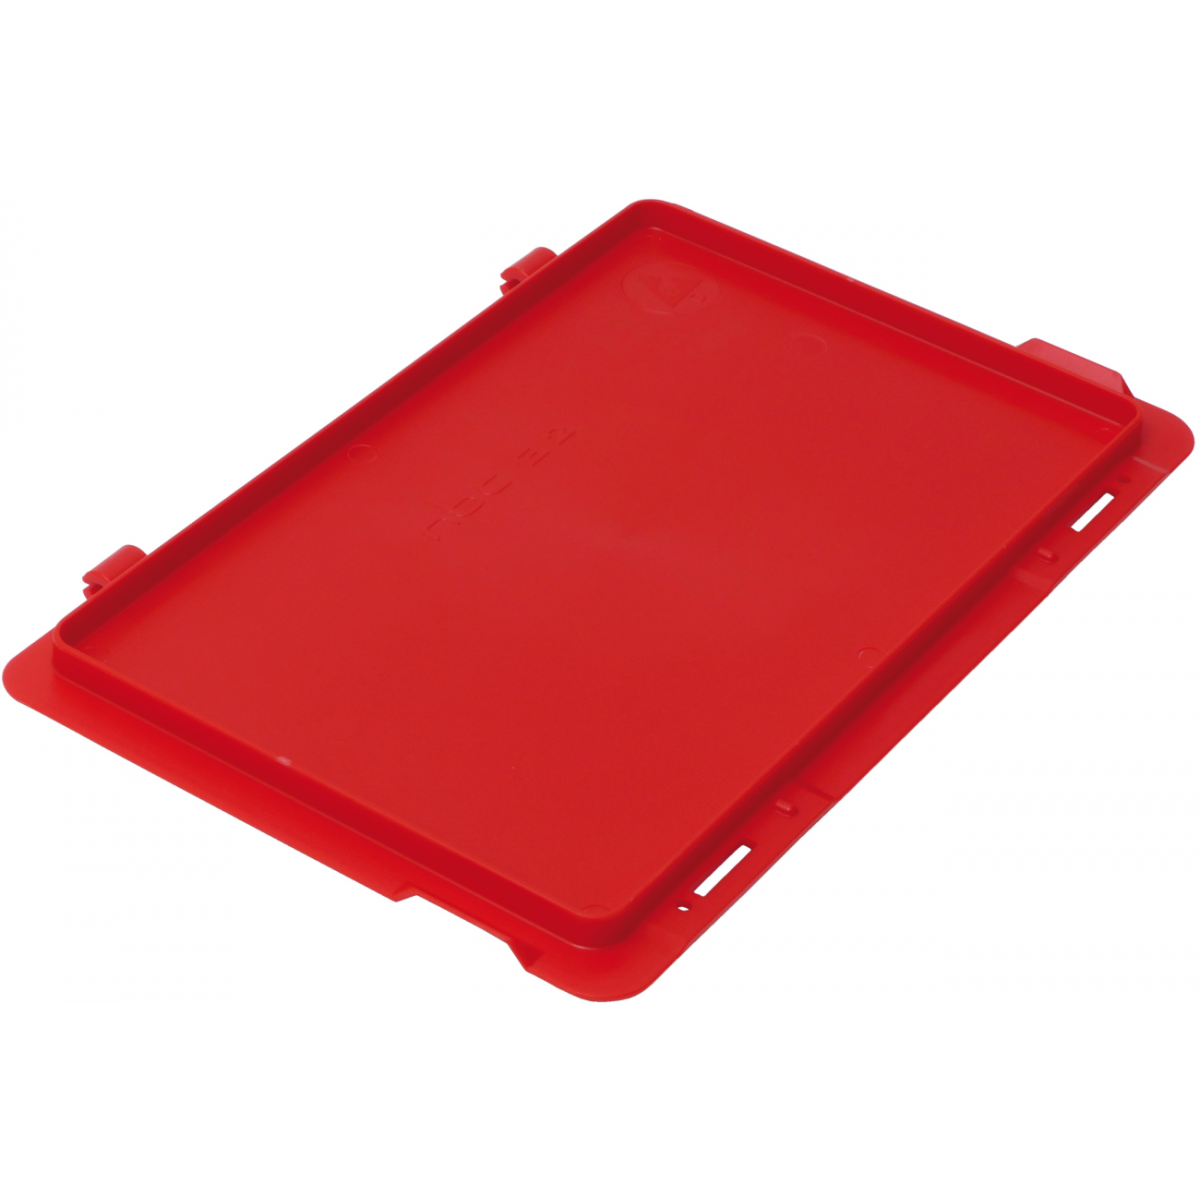 Farbe:rot, Ausführung:Scharnierdeckel, Außenmaße:300 x 200 mm